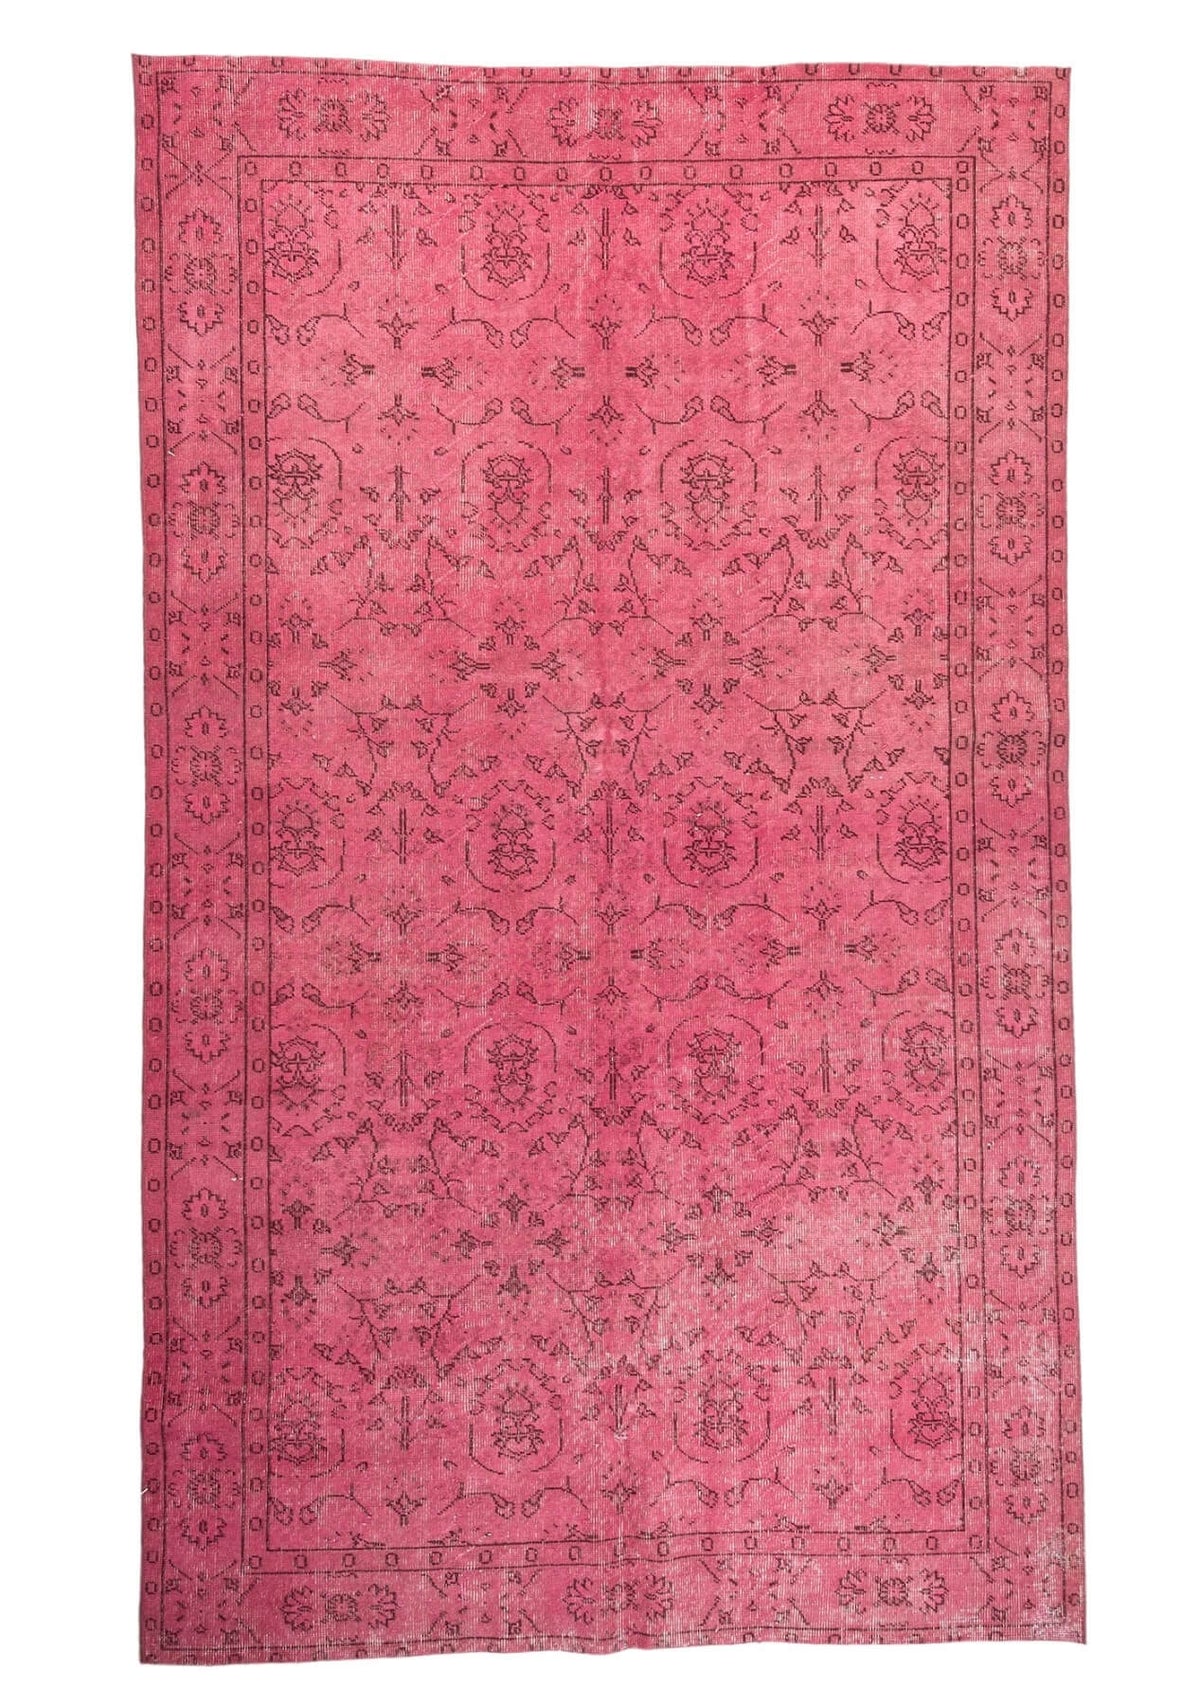 Lesa - Vintage Pink Overdyed Rug - kudenrugs